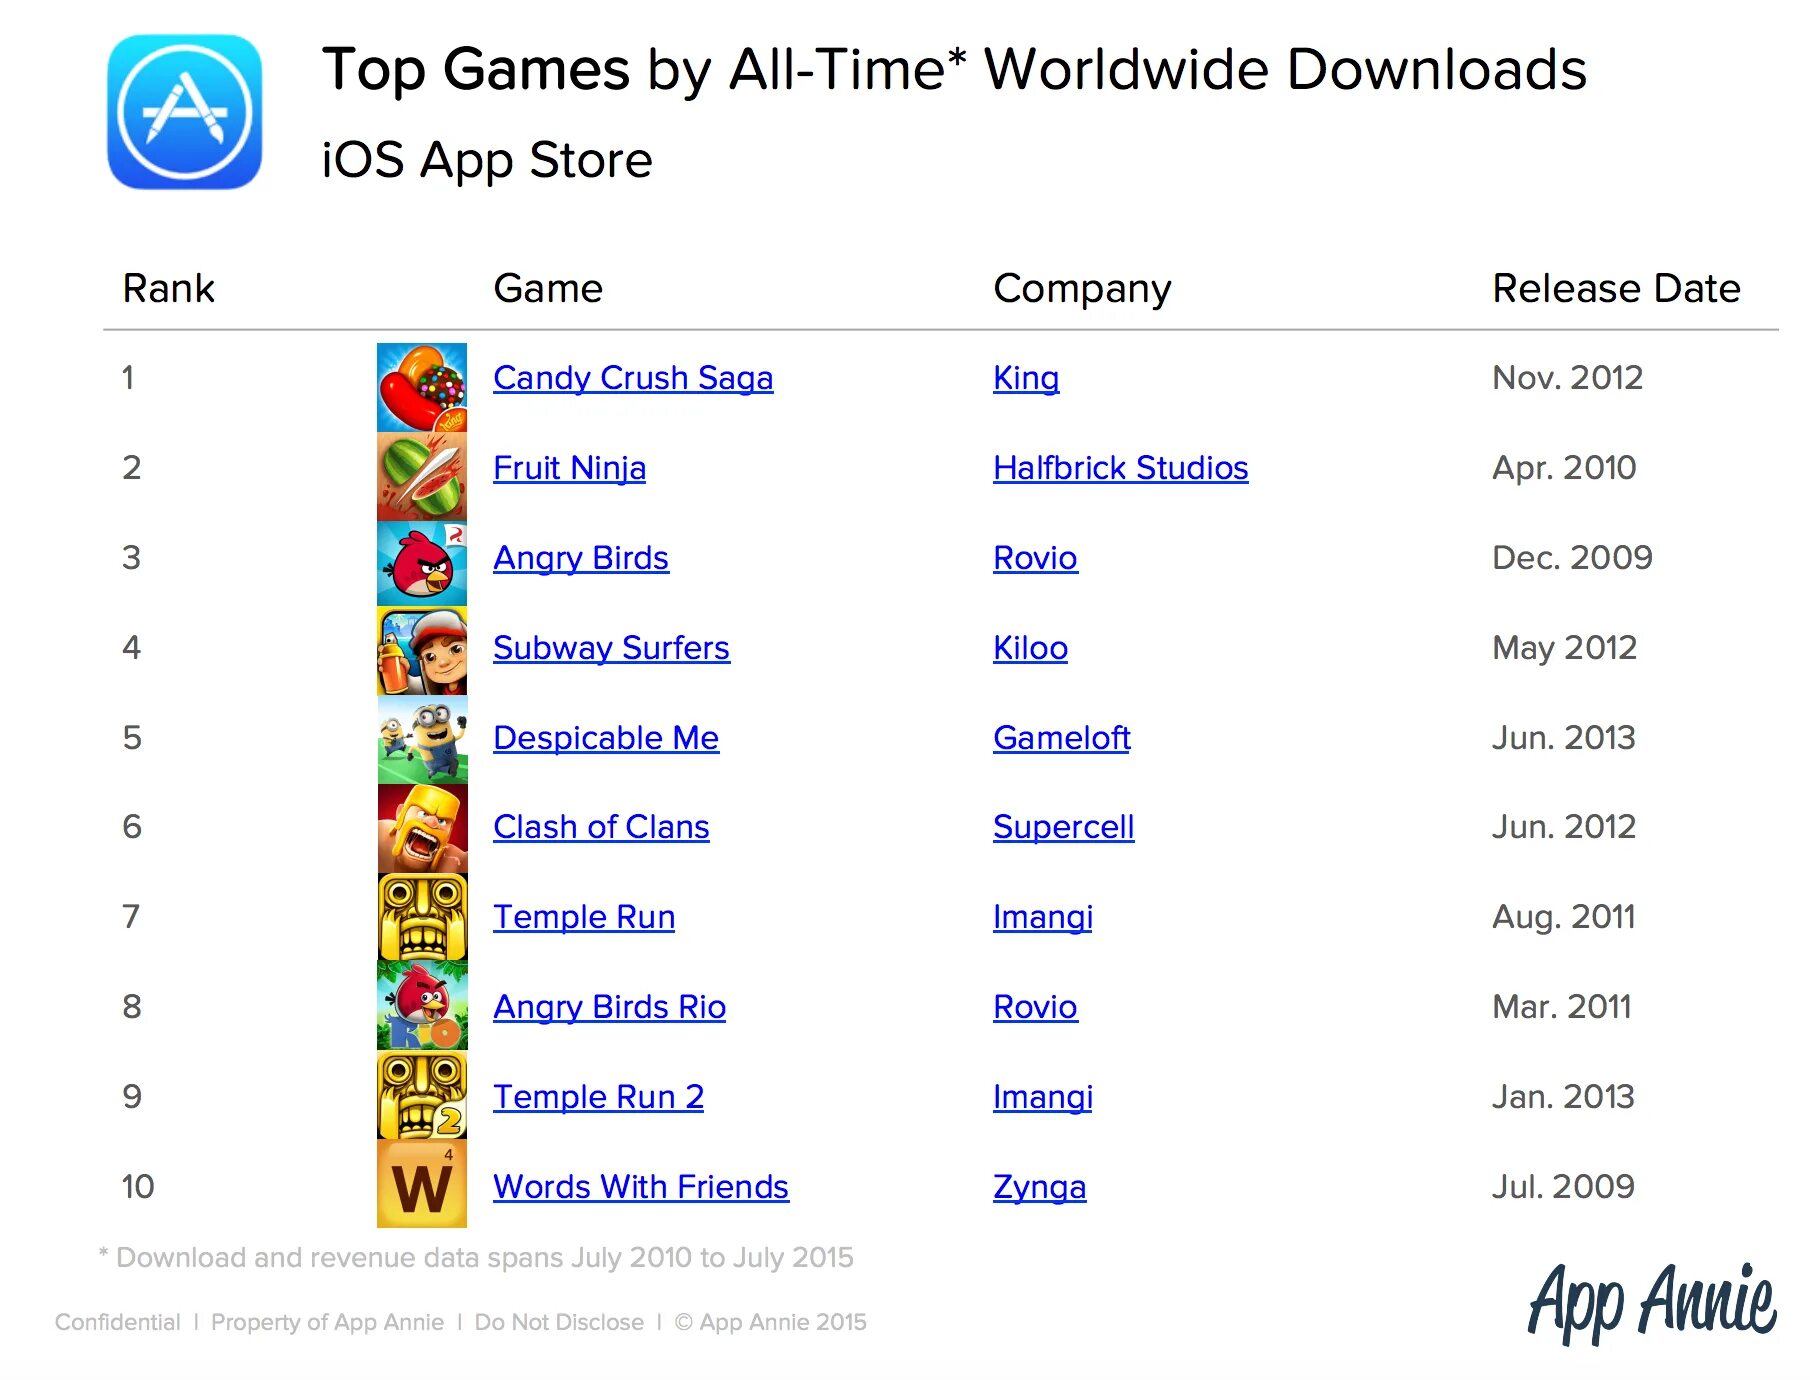 Рейтинг игр за все время. Список самых популярных игр. Популярные игры список. Список самых популярных мобильных игр. Какая игра на 1 месте.